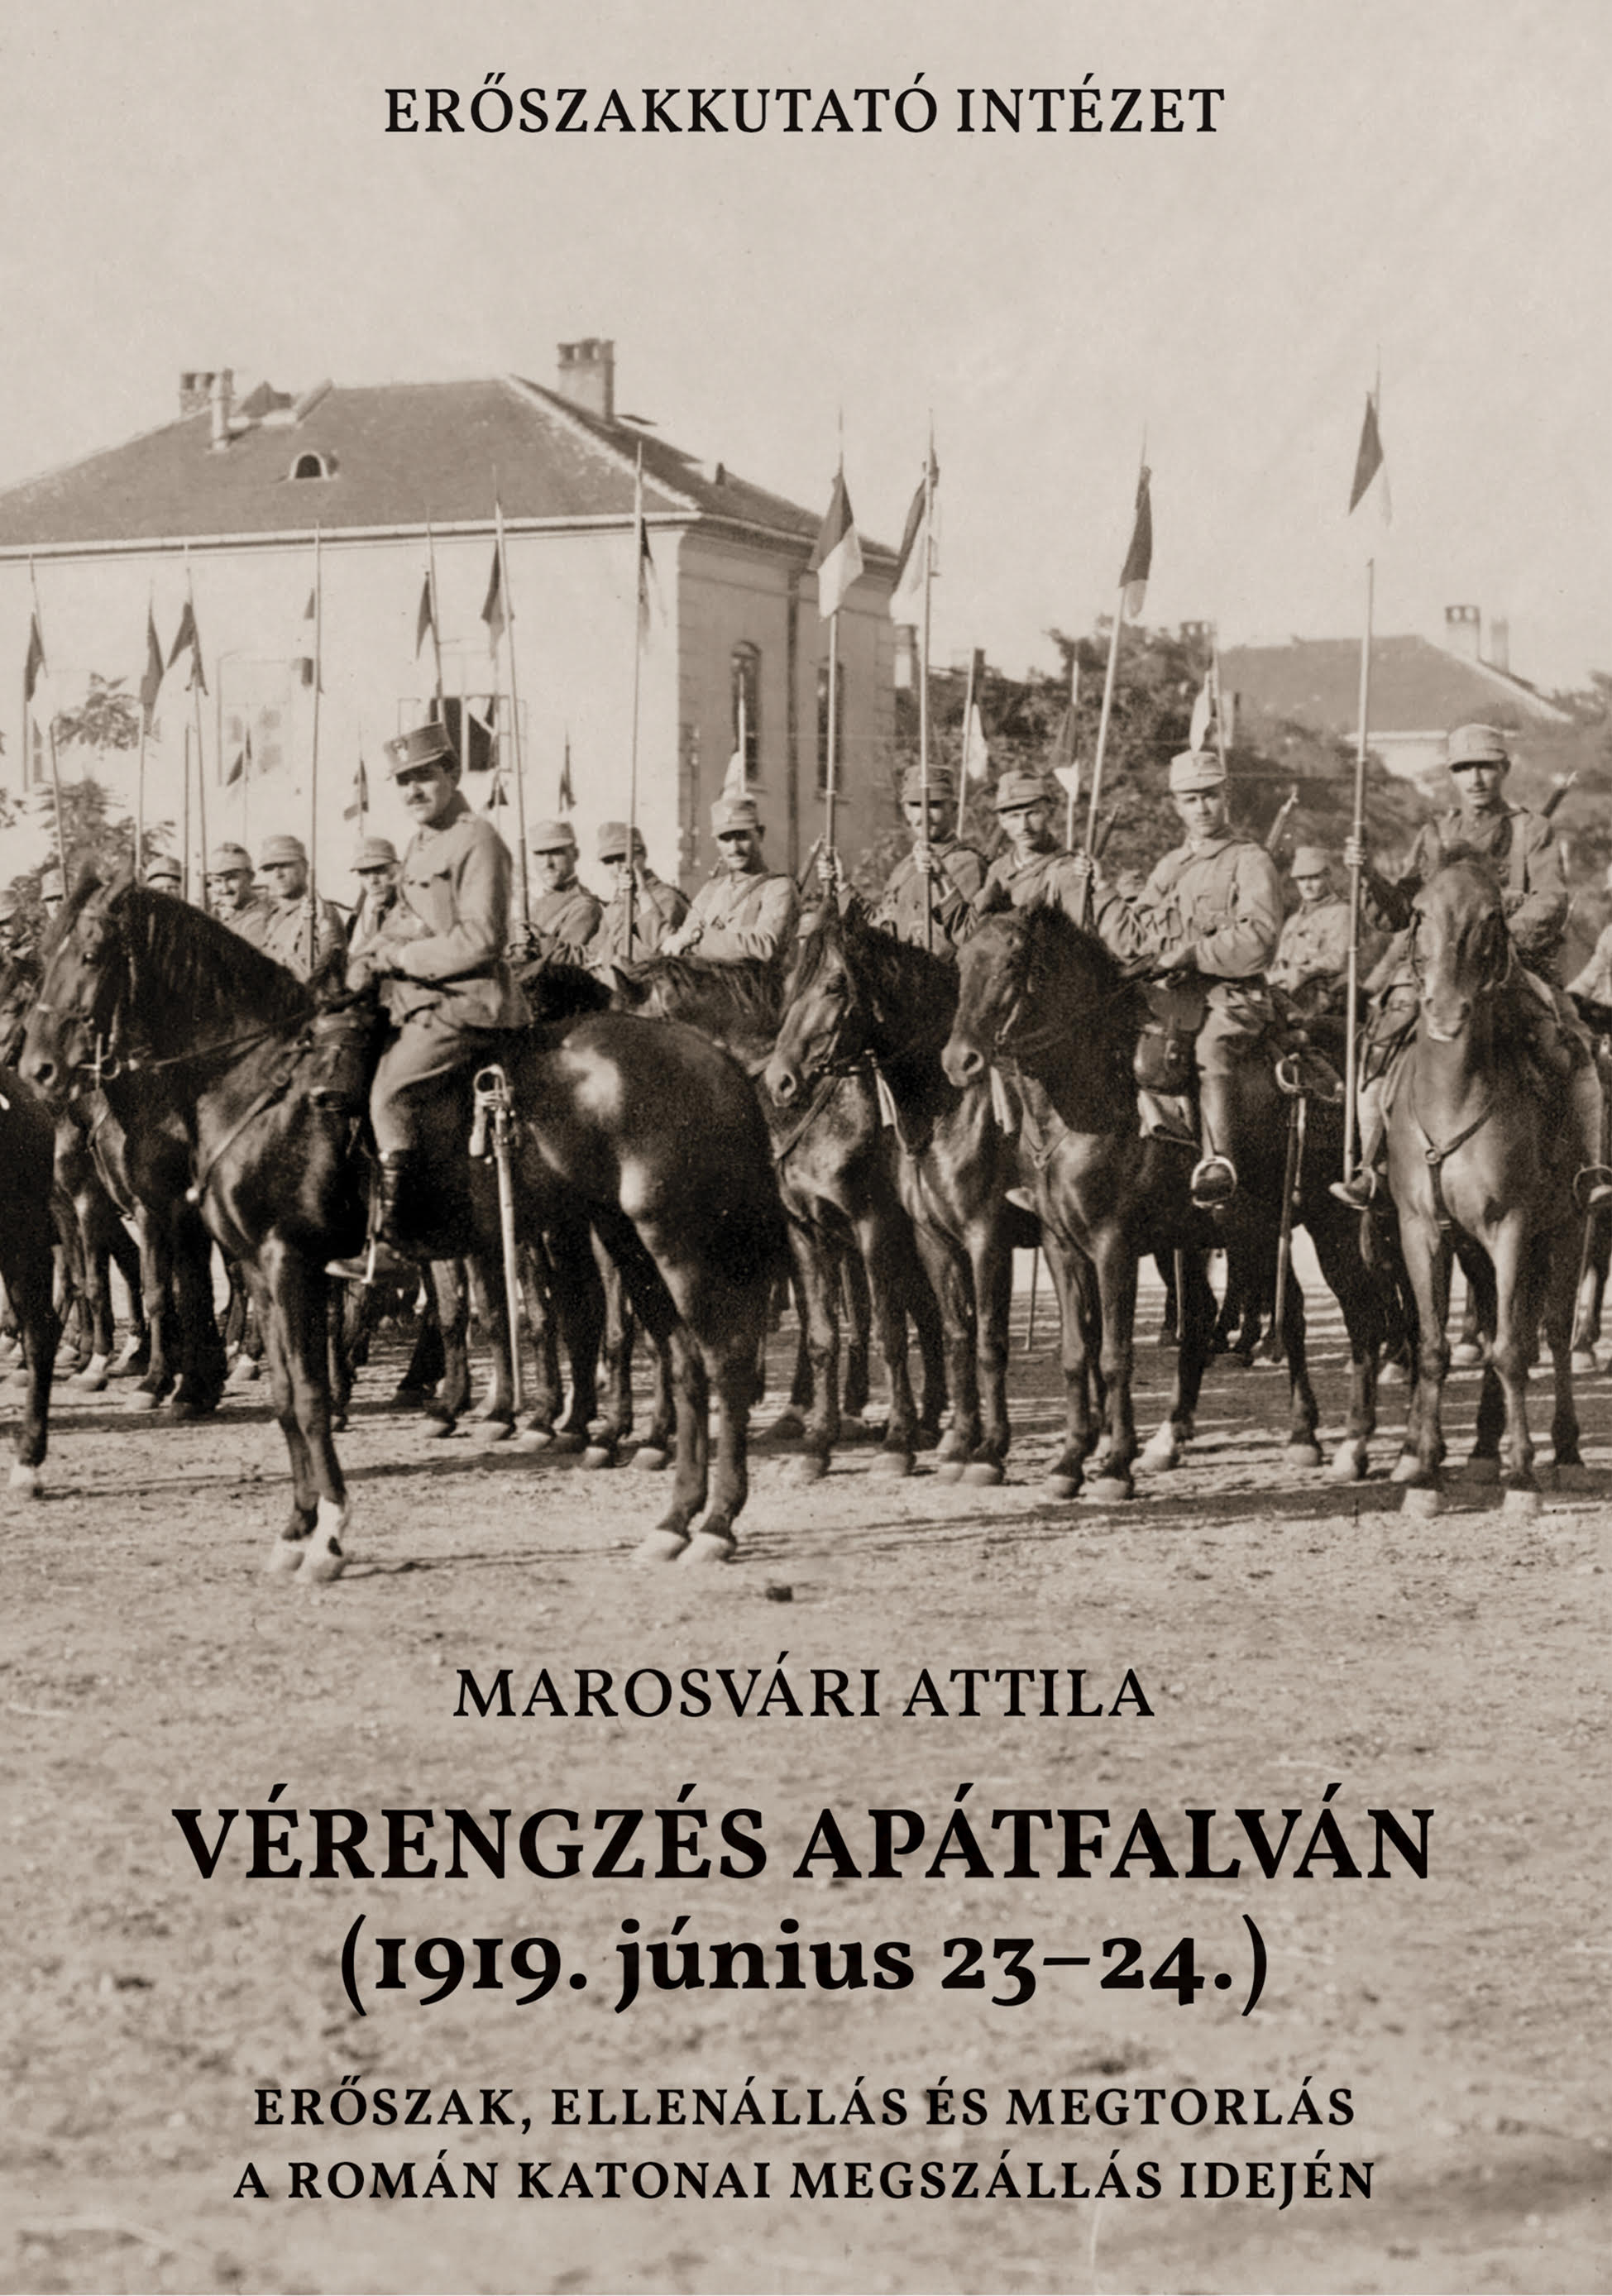 VÉRENGZÉS APÁTFALVÁN (1919. JÚNIUS 23-24.)